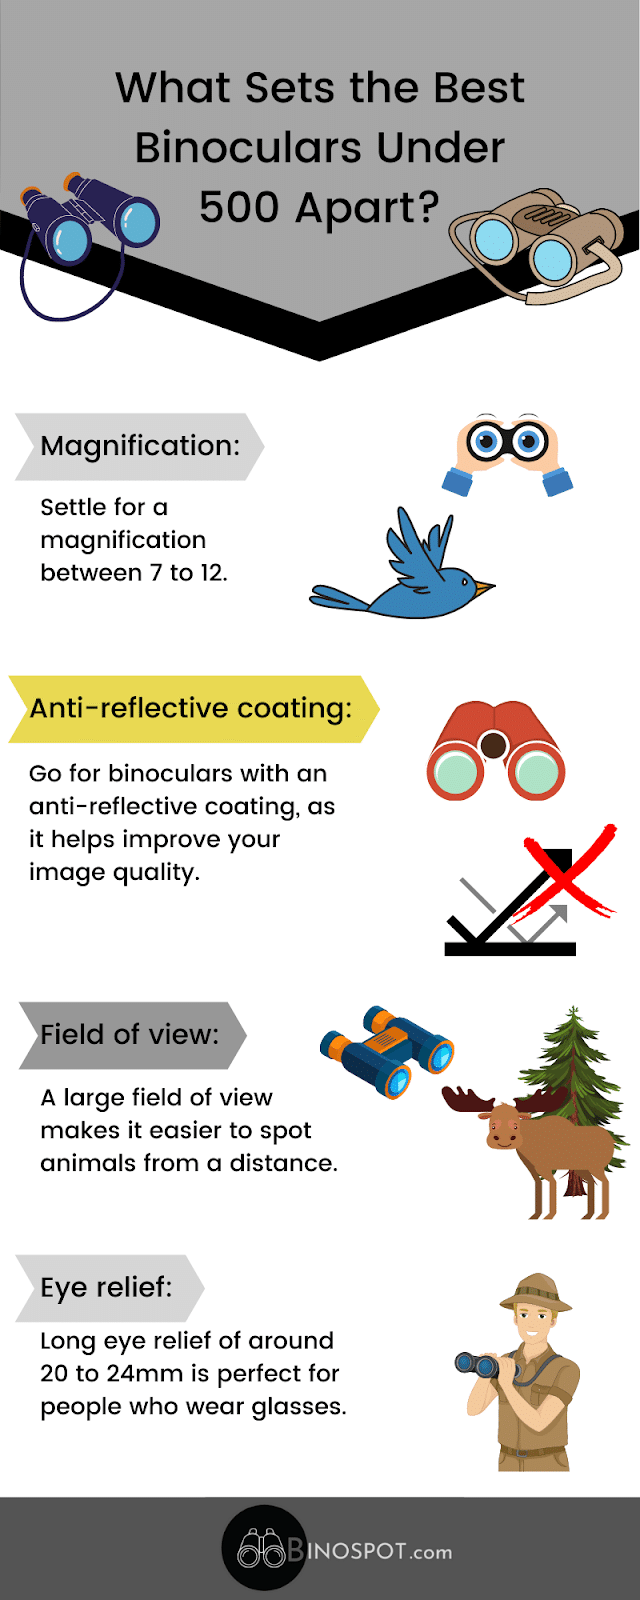 Best Binoculars Under 500 infographic
 